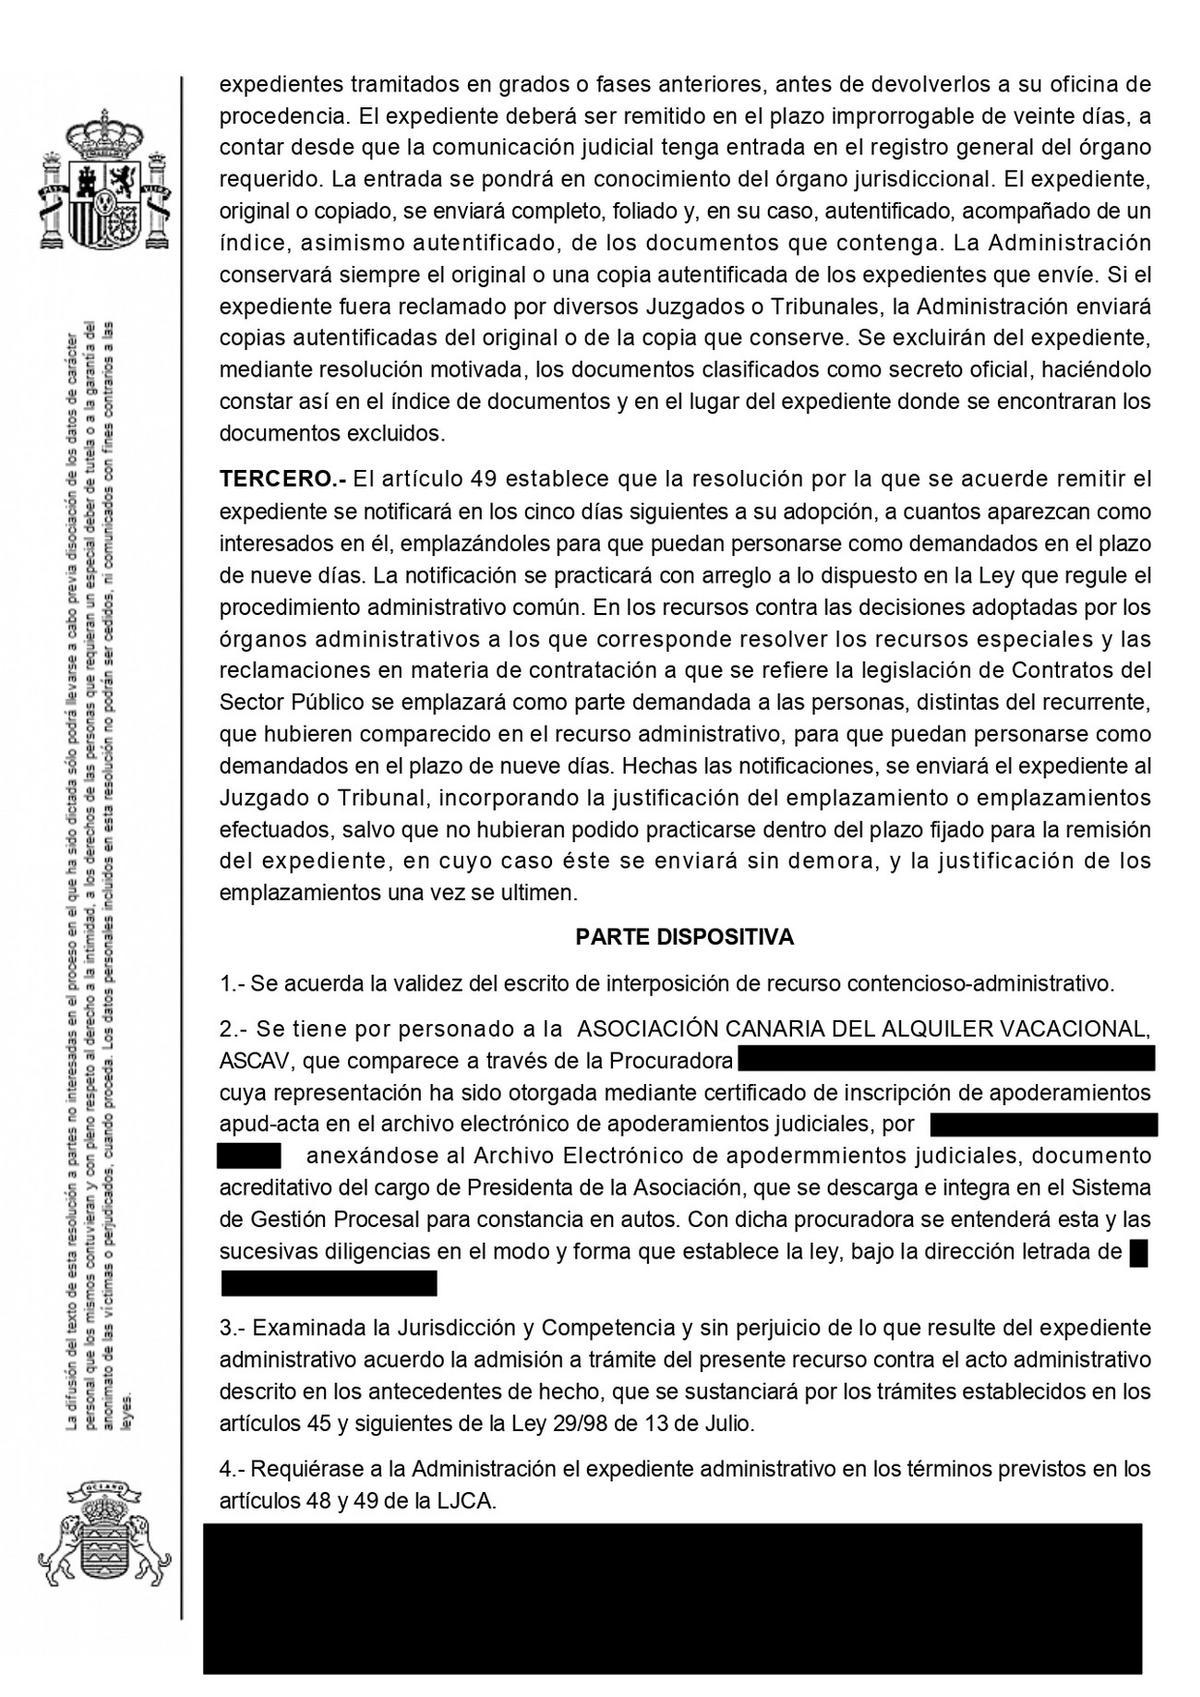 Documento de la admision a tramite del recurso contencioso ASCAV y Consejeria de Turismo del Gobierno de Canarias.